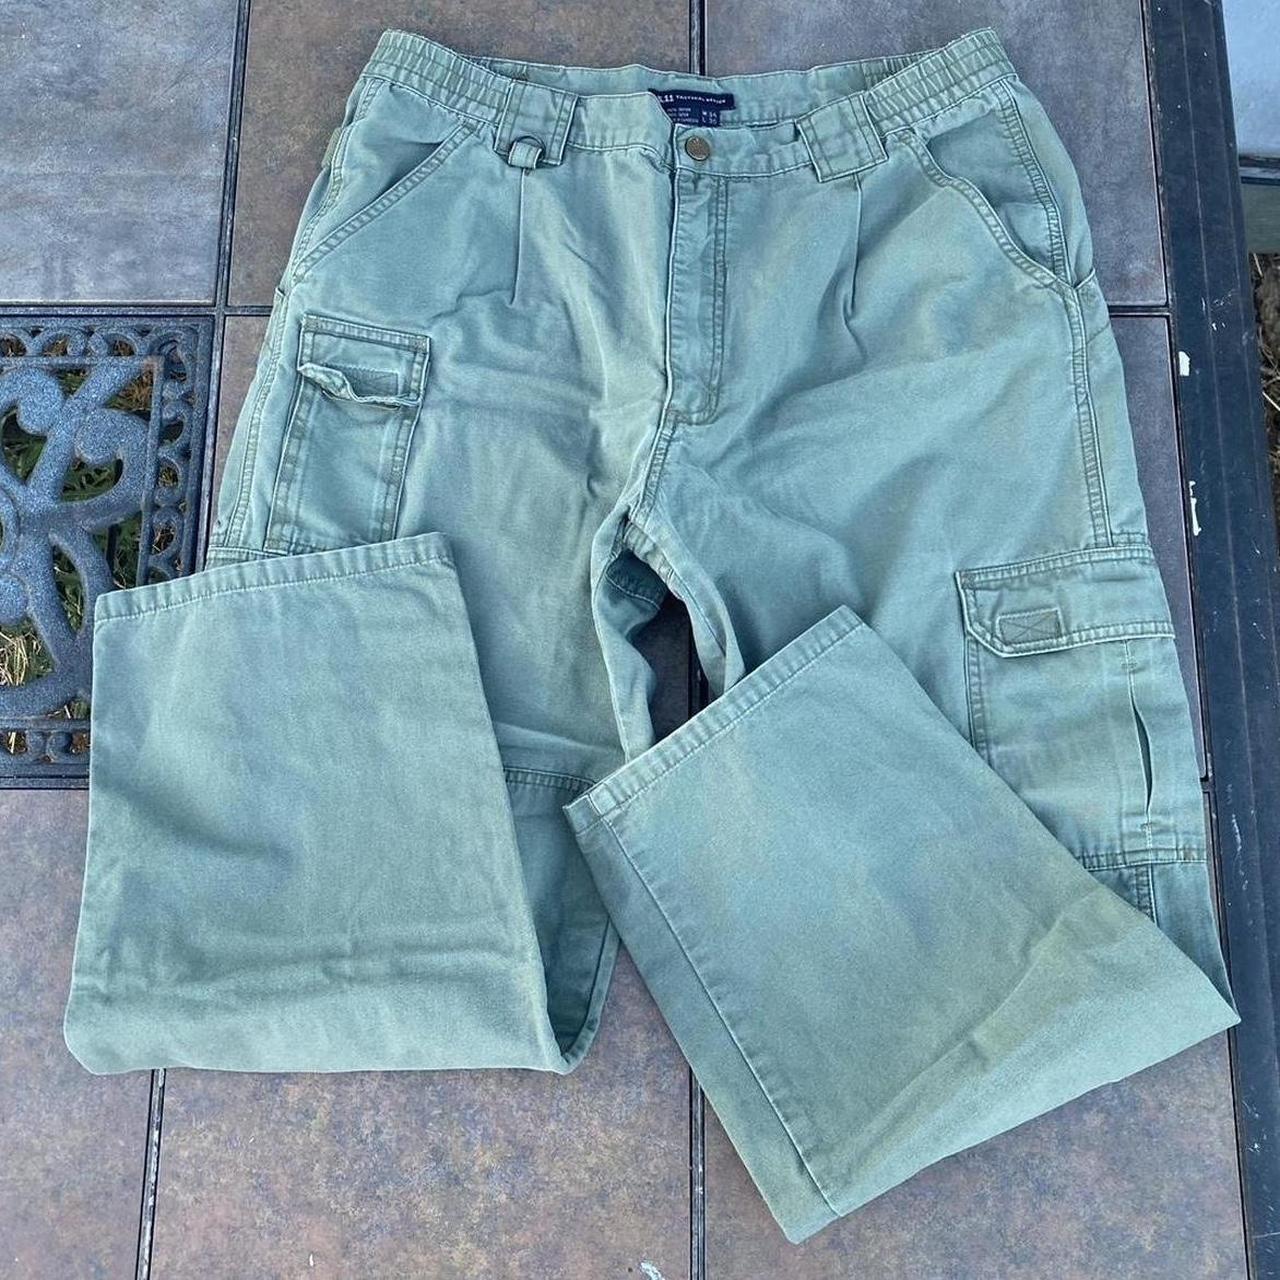 Vintage Cargo Pants Light green color / Size 34... - Depop